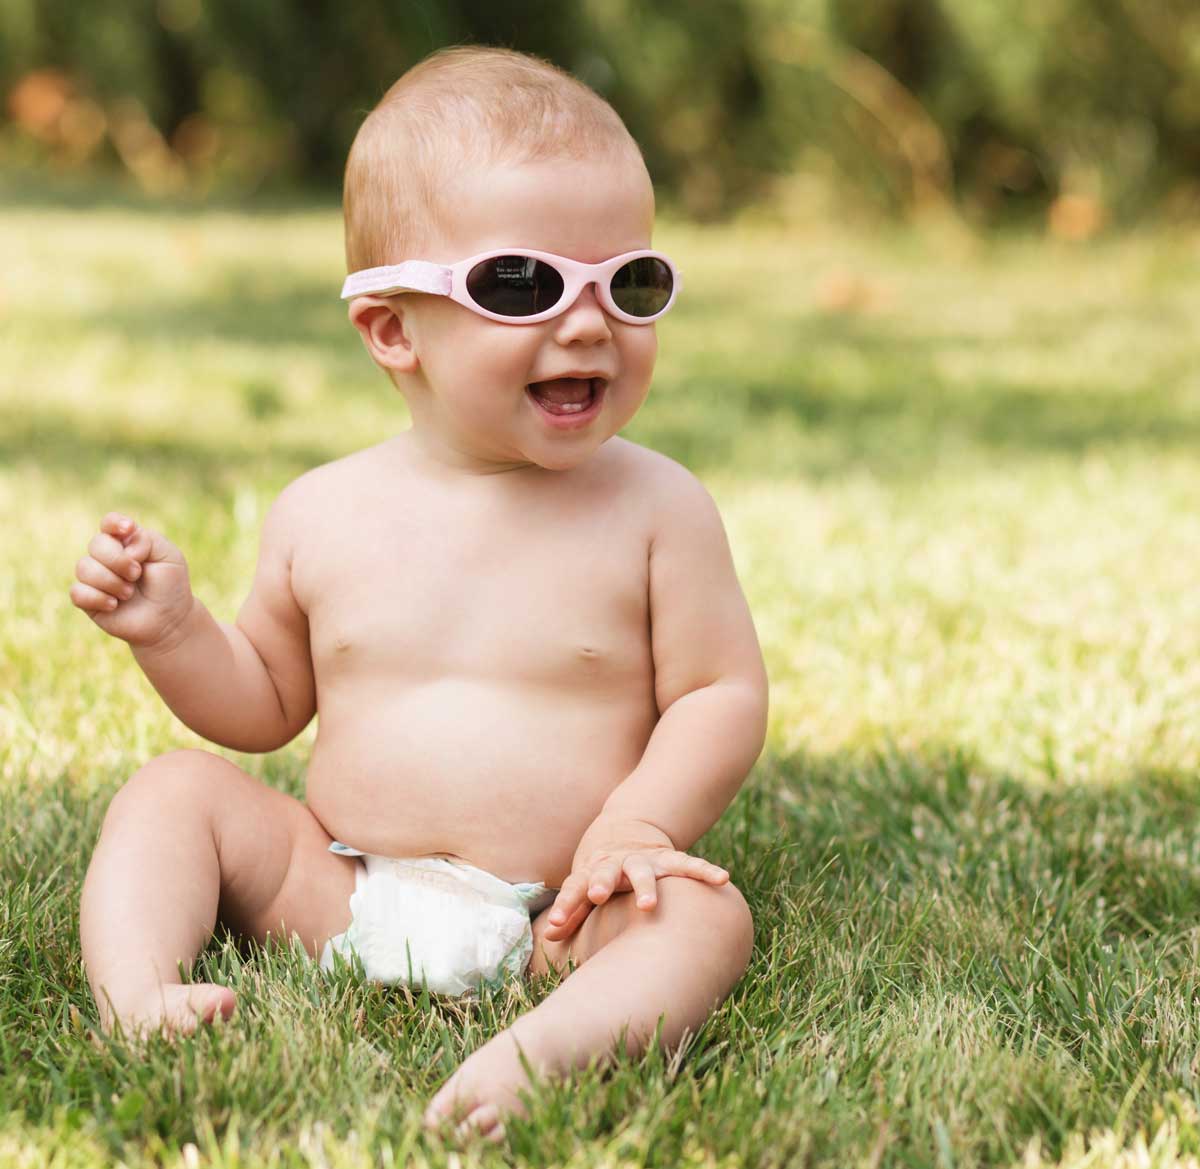 pimienta absorción básico Las mejores gafas de sol para bebés y niños - Pequeocio